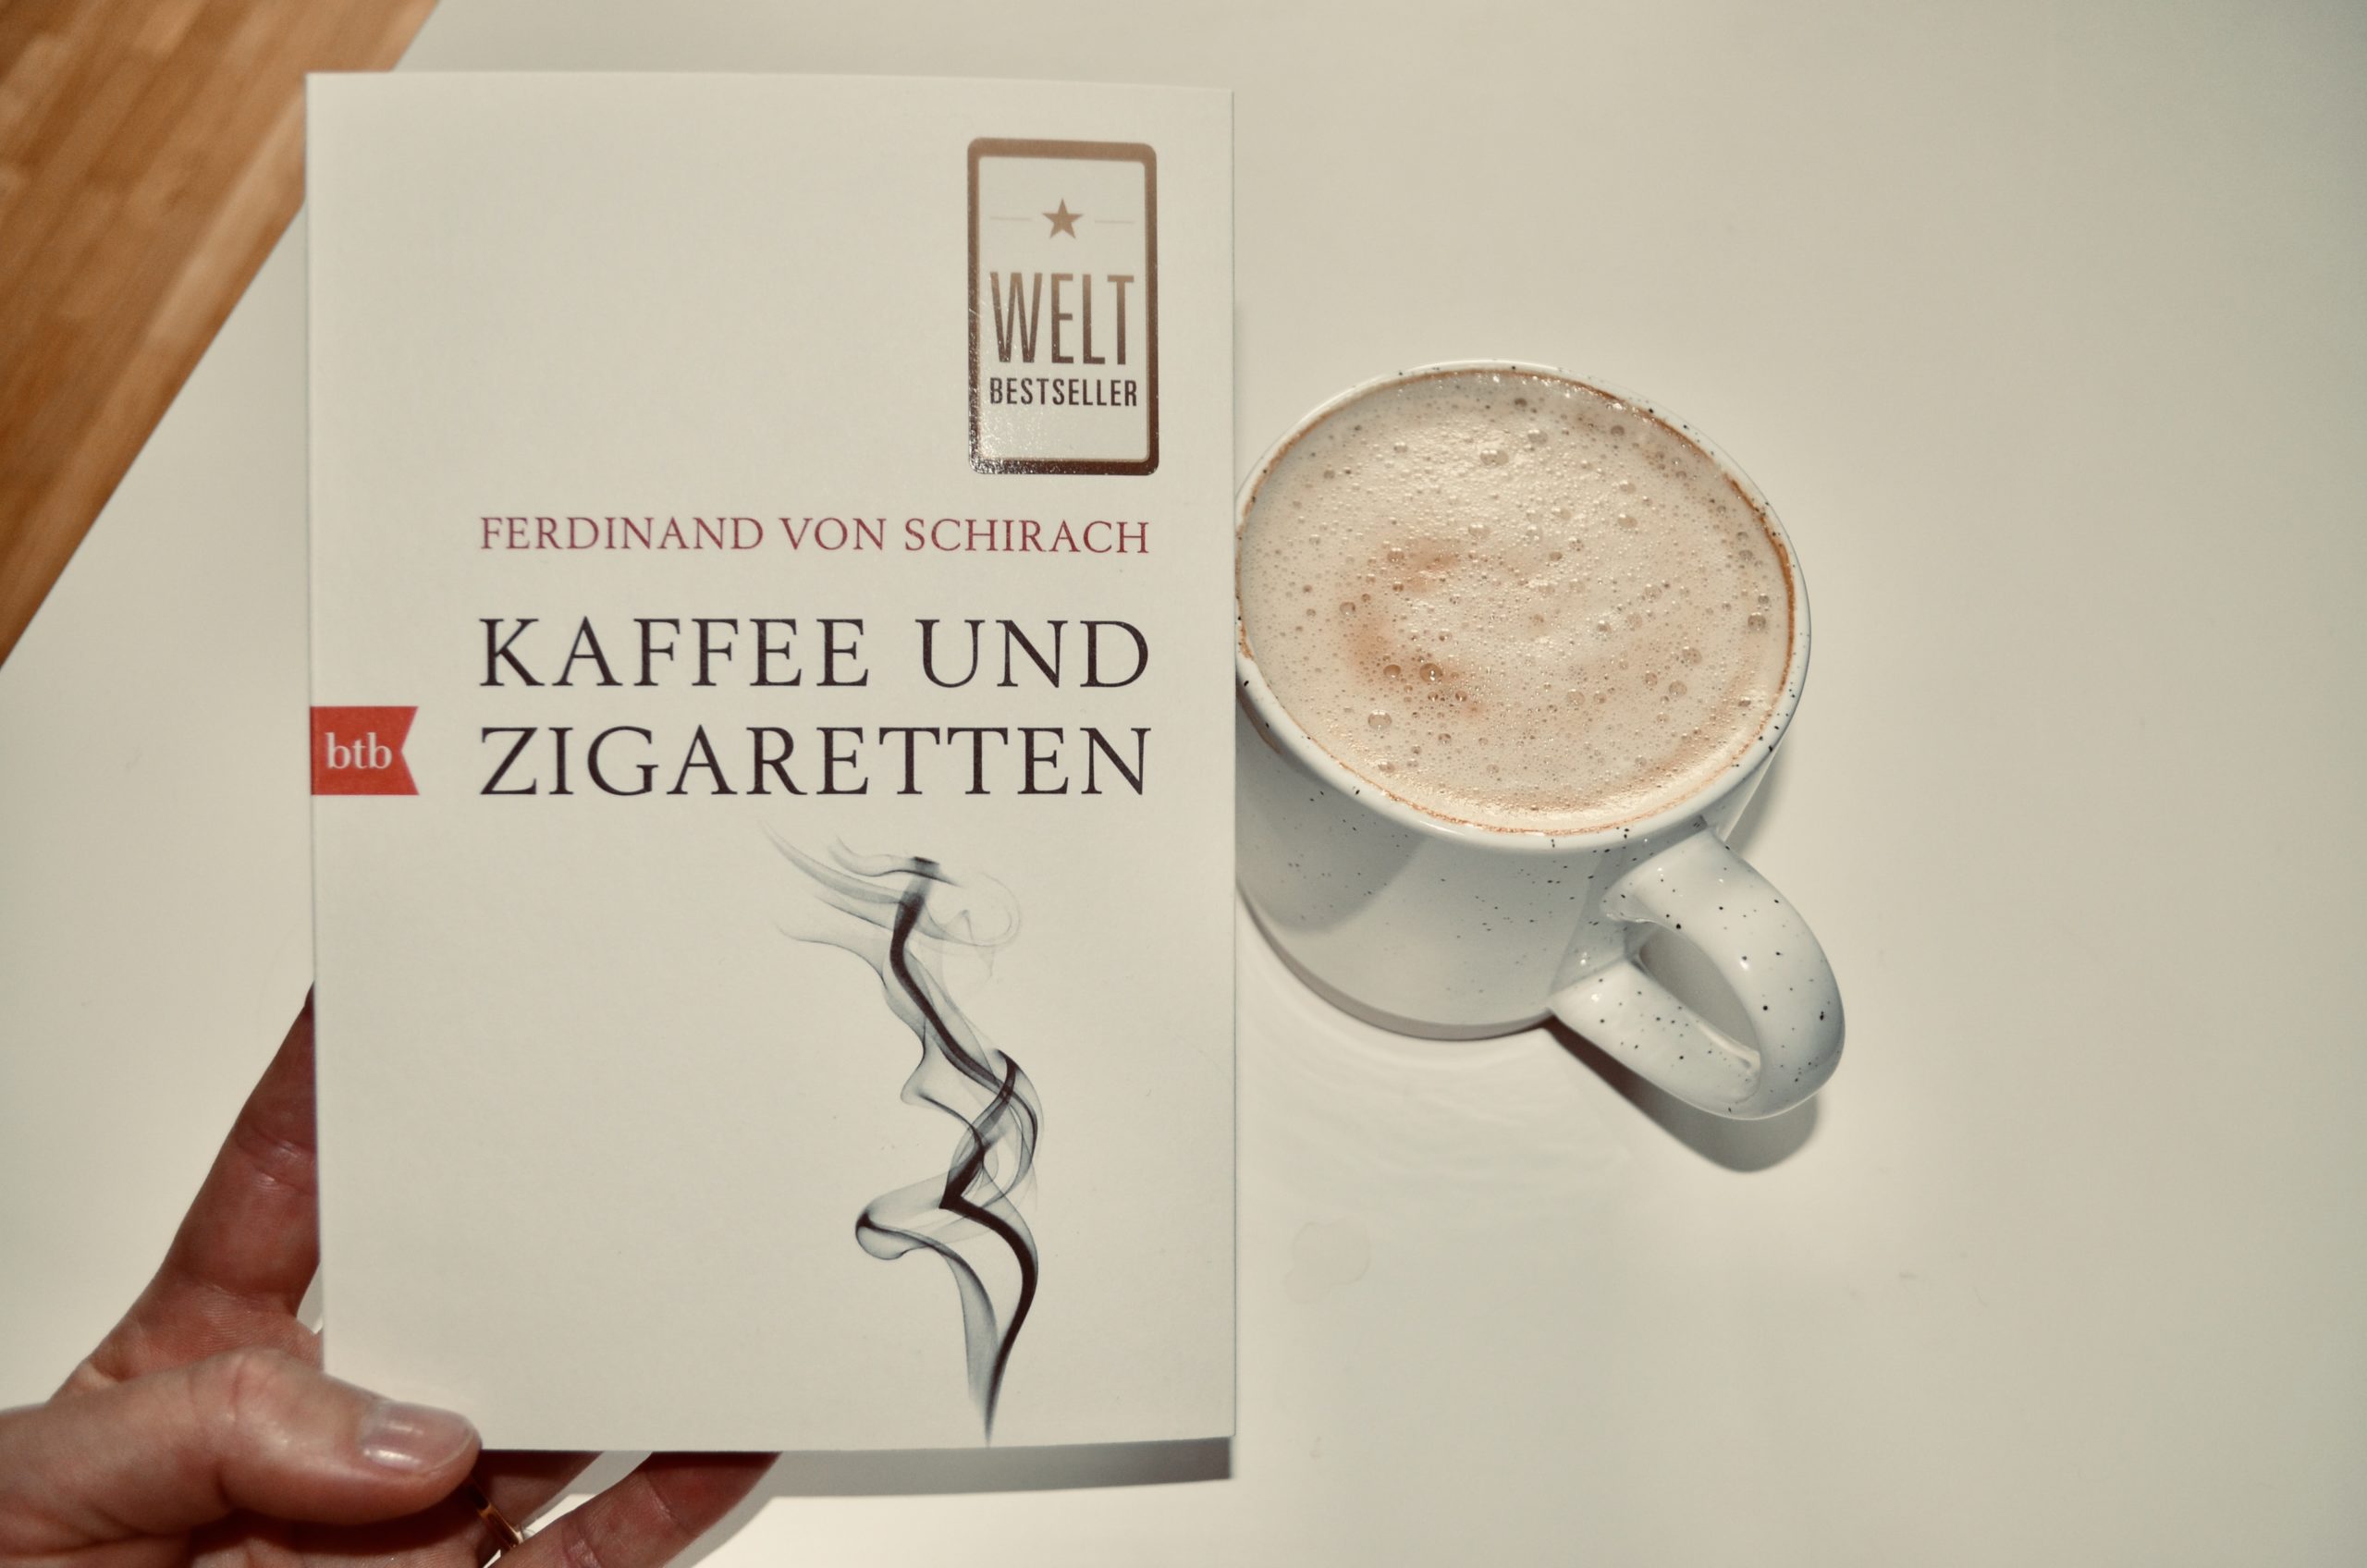 Ferdinand von Schirach: Kaffee und Zigaretten